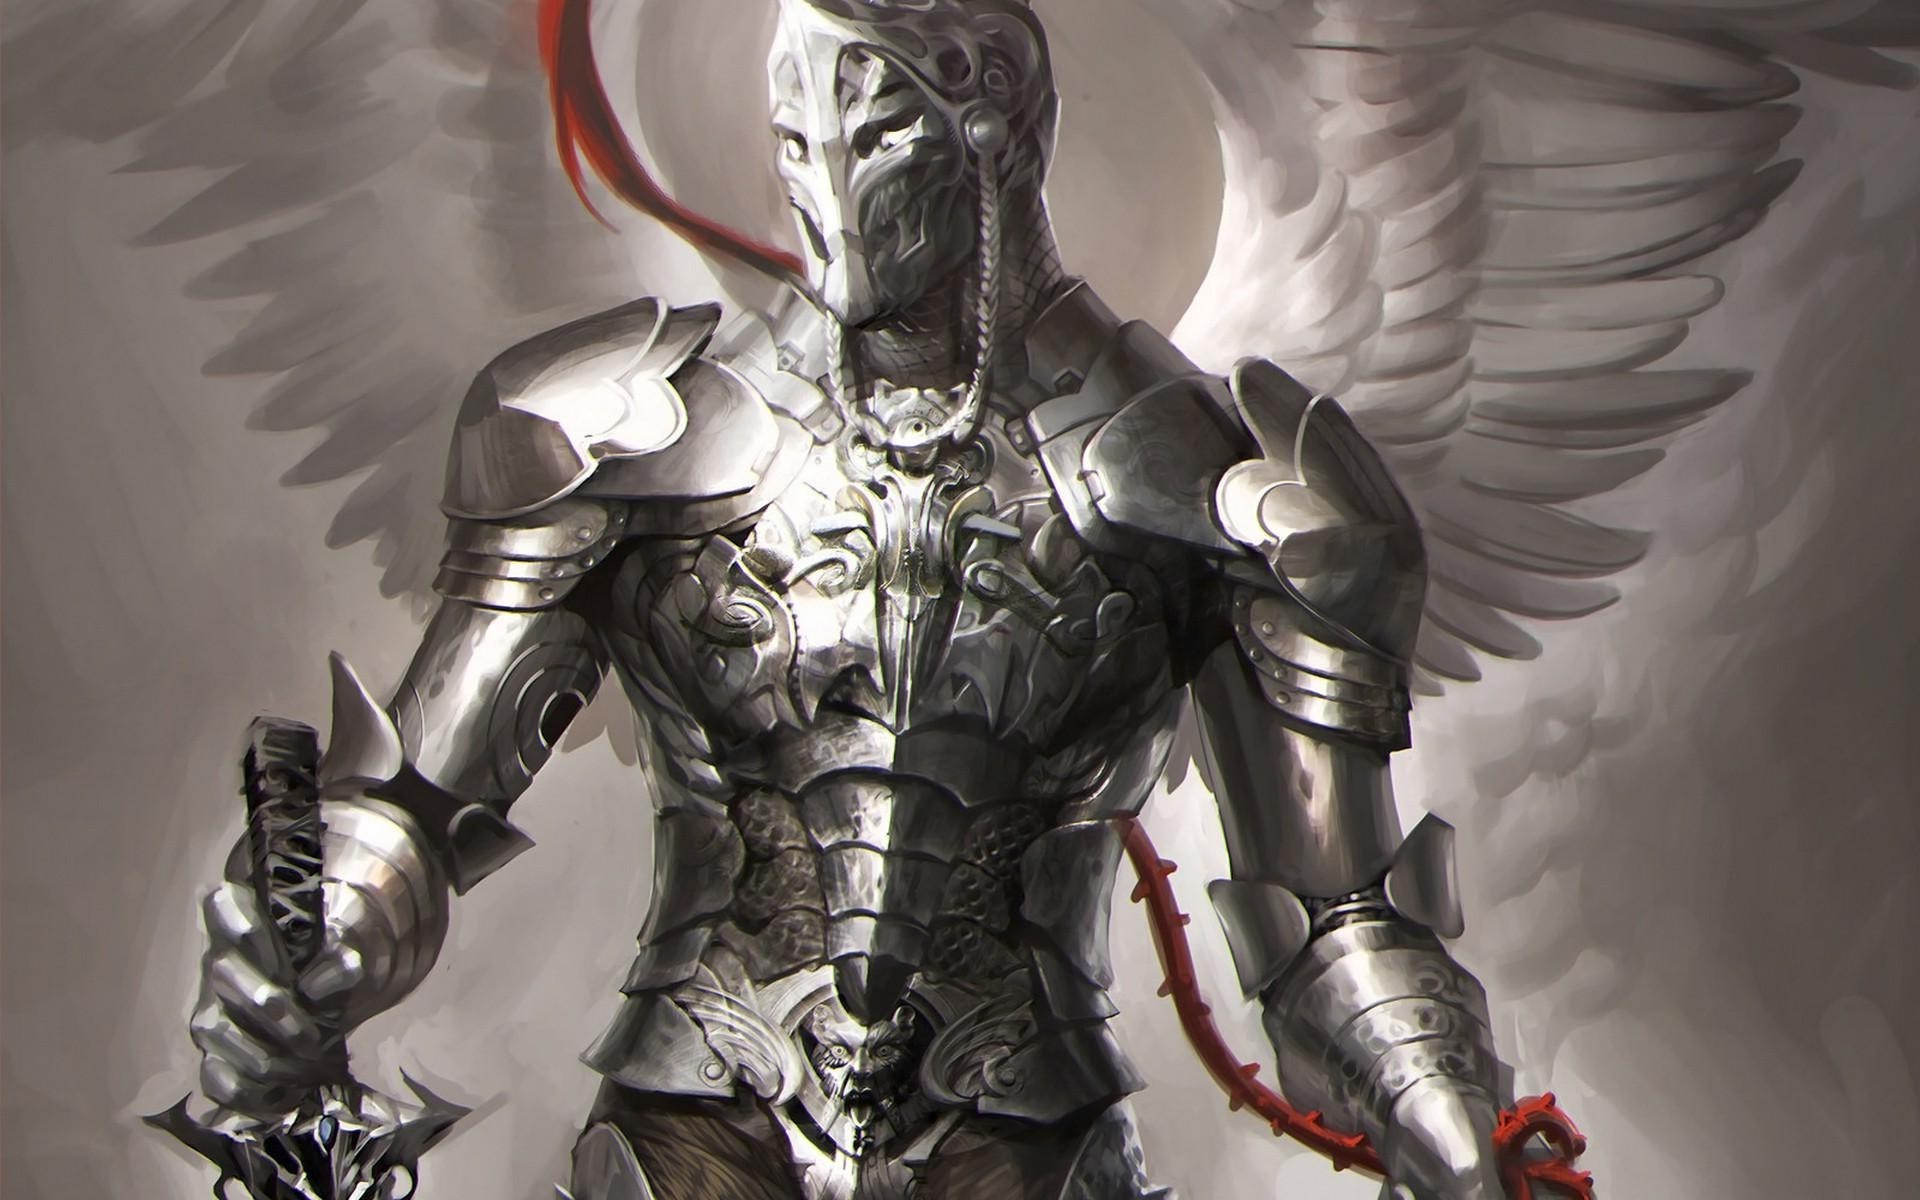 fondo de pantalla de caballero medieval,armadura,demonio,caballero,personaje de ficción,cg artwork